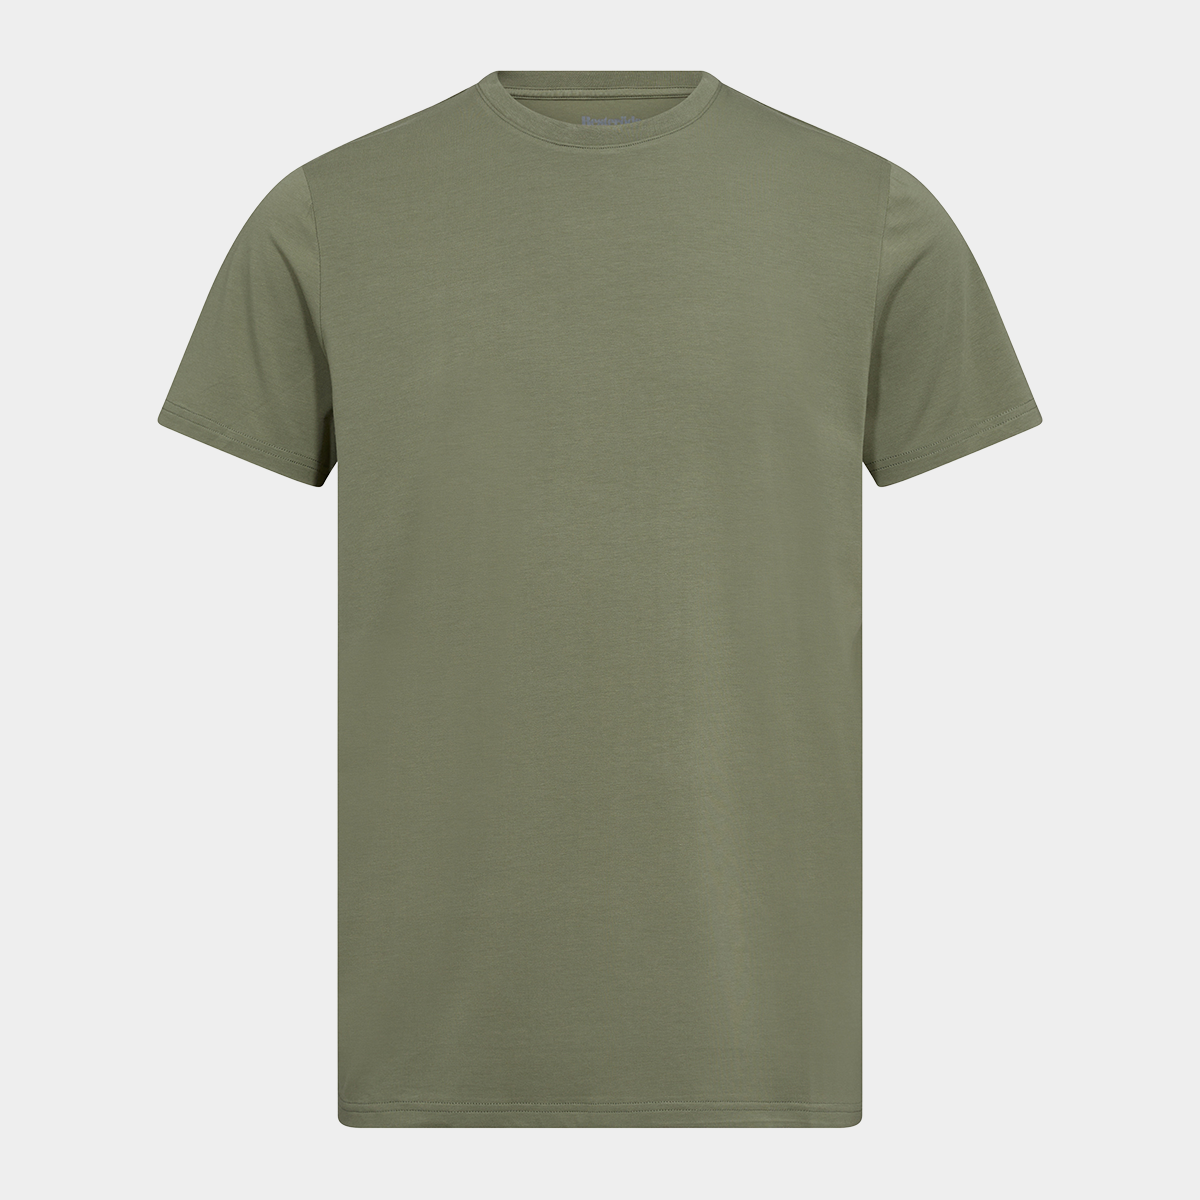 Billede af Grøn bambus r-neck t-shirt til herre fra Resteröds, XL hos Bambustøj.dk